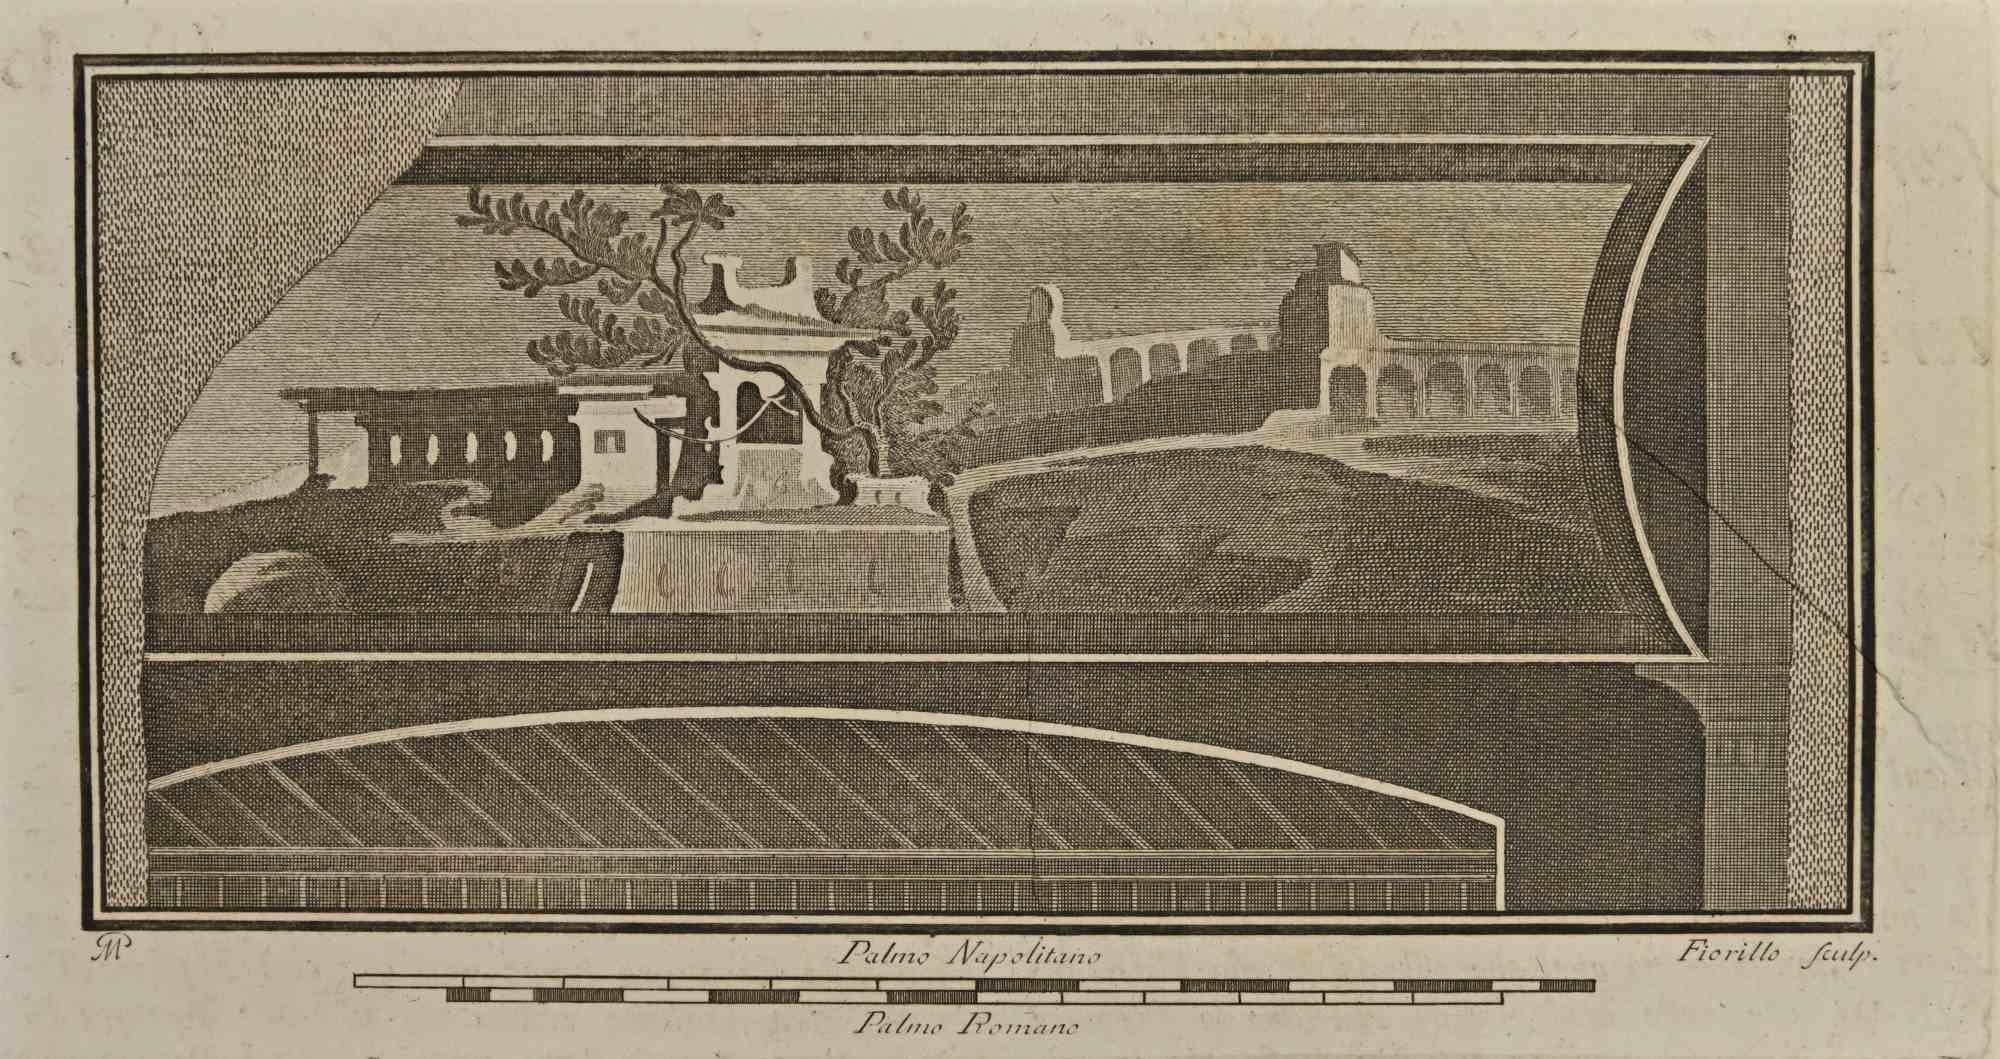 Römisches Tempelfresko aus den "Altertümern von Herculaneum" ist eine Radierung auf Papier von Nicola Fiorillo aus dem 18. Jahrhundert.

 Signiert auf der Platte.

Guter Zustand mit einigen Faltungen.

Die Radierung gehört zu der Druckserie